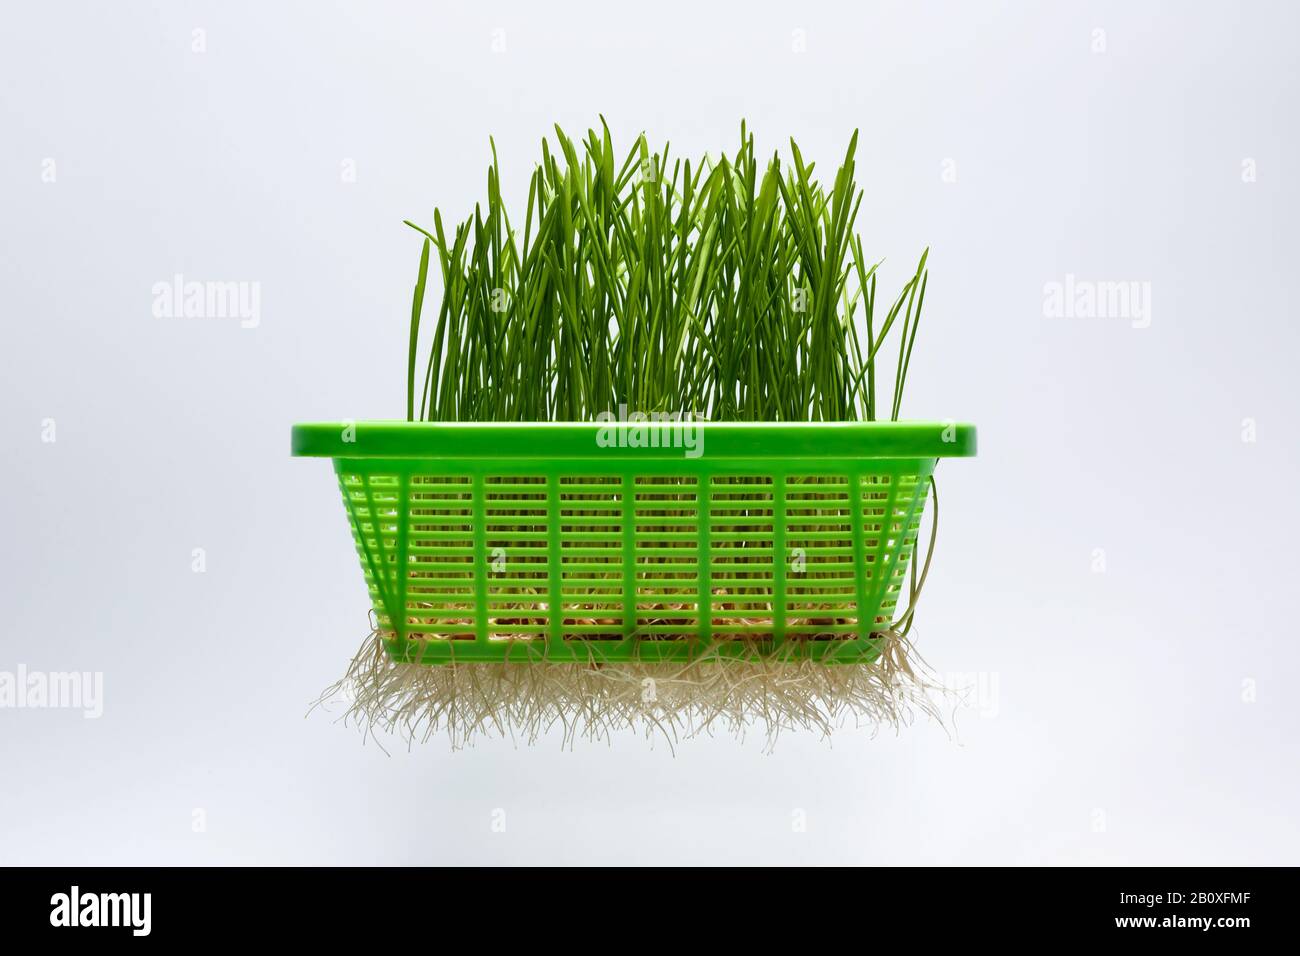 Grüne Roggensprosse in Kunststoffbehälter isoliert auf weißem Grund. Stockfoto